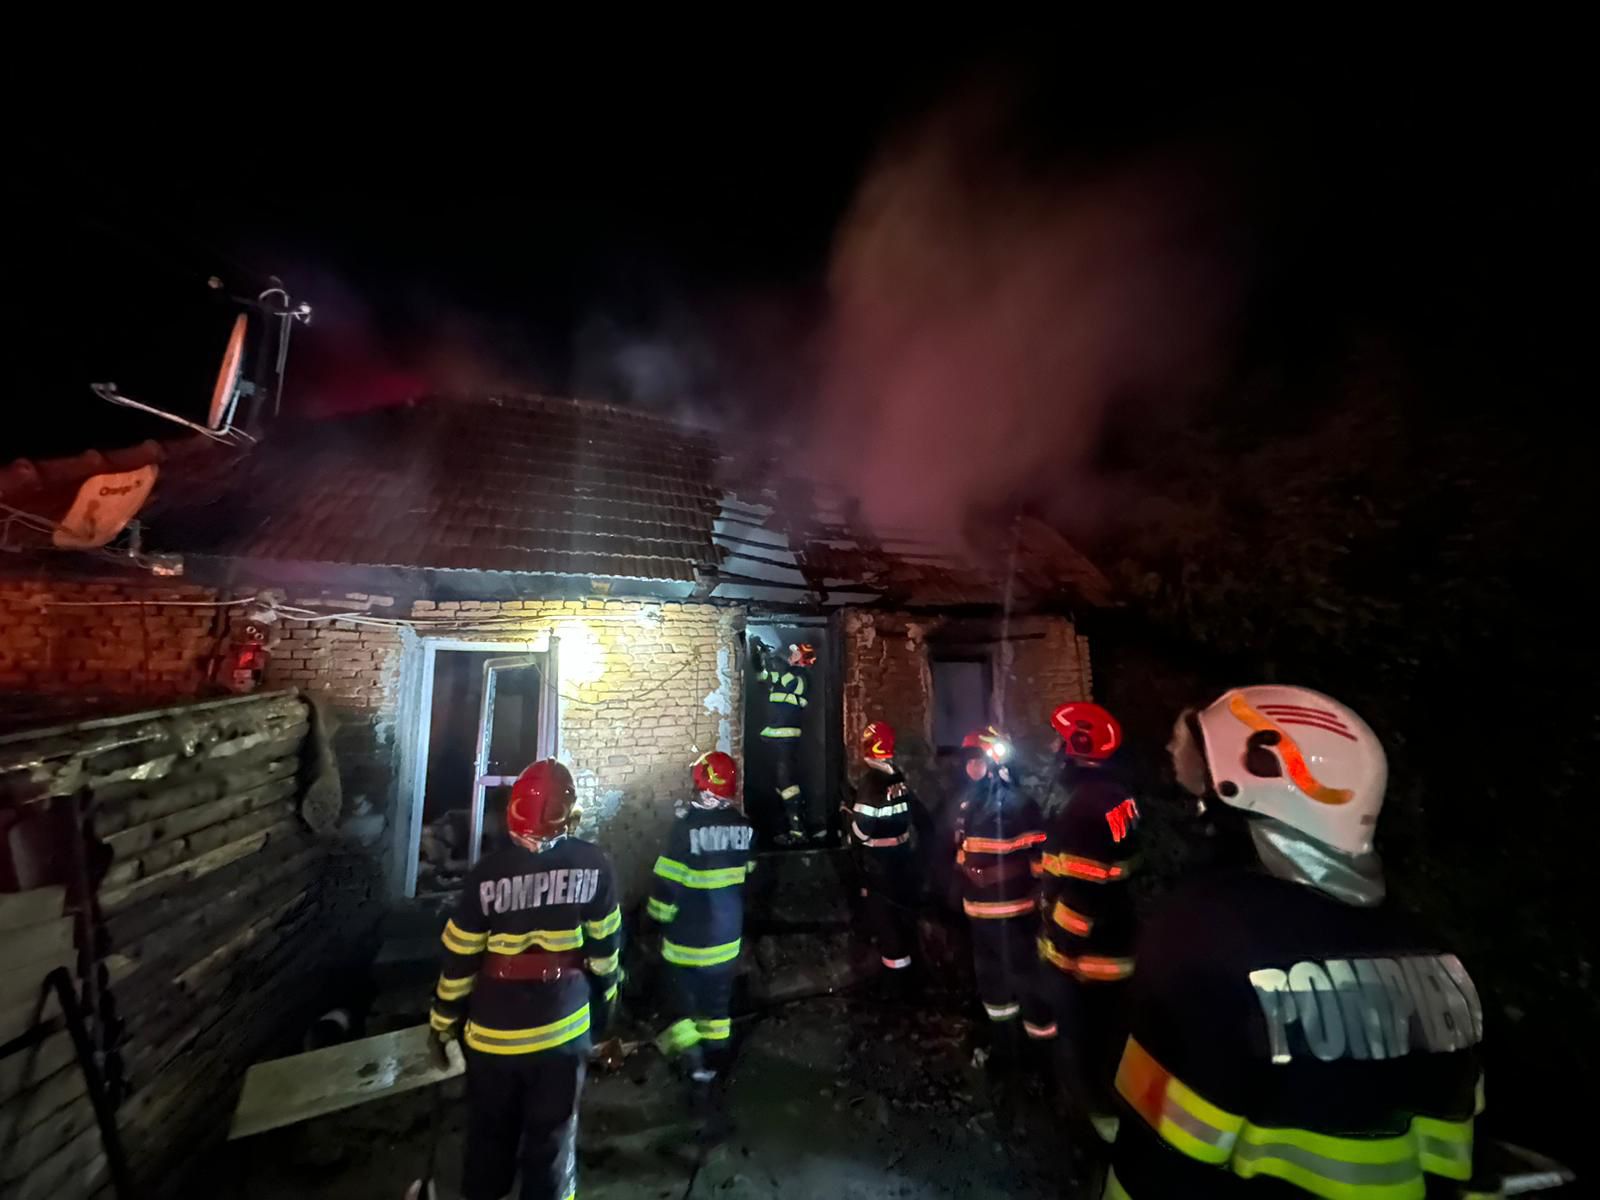 Casa din Săliște care a ars aseară a fost incendiată